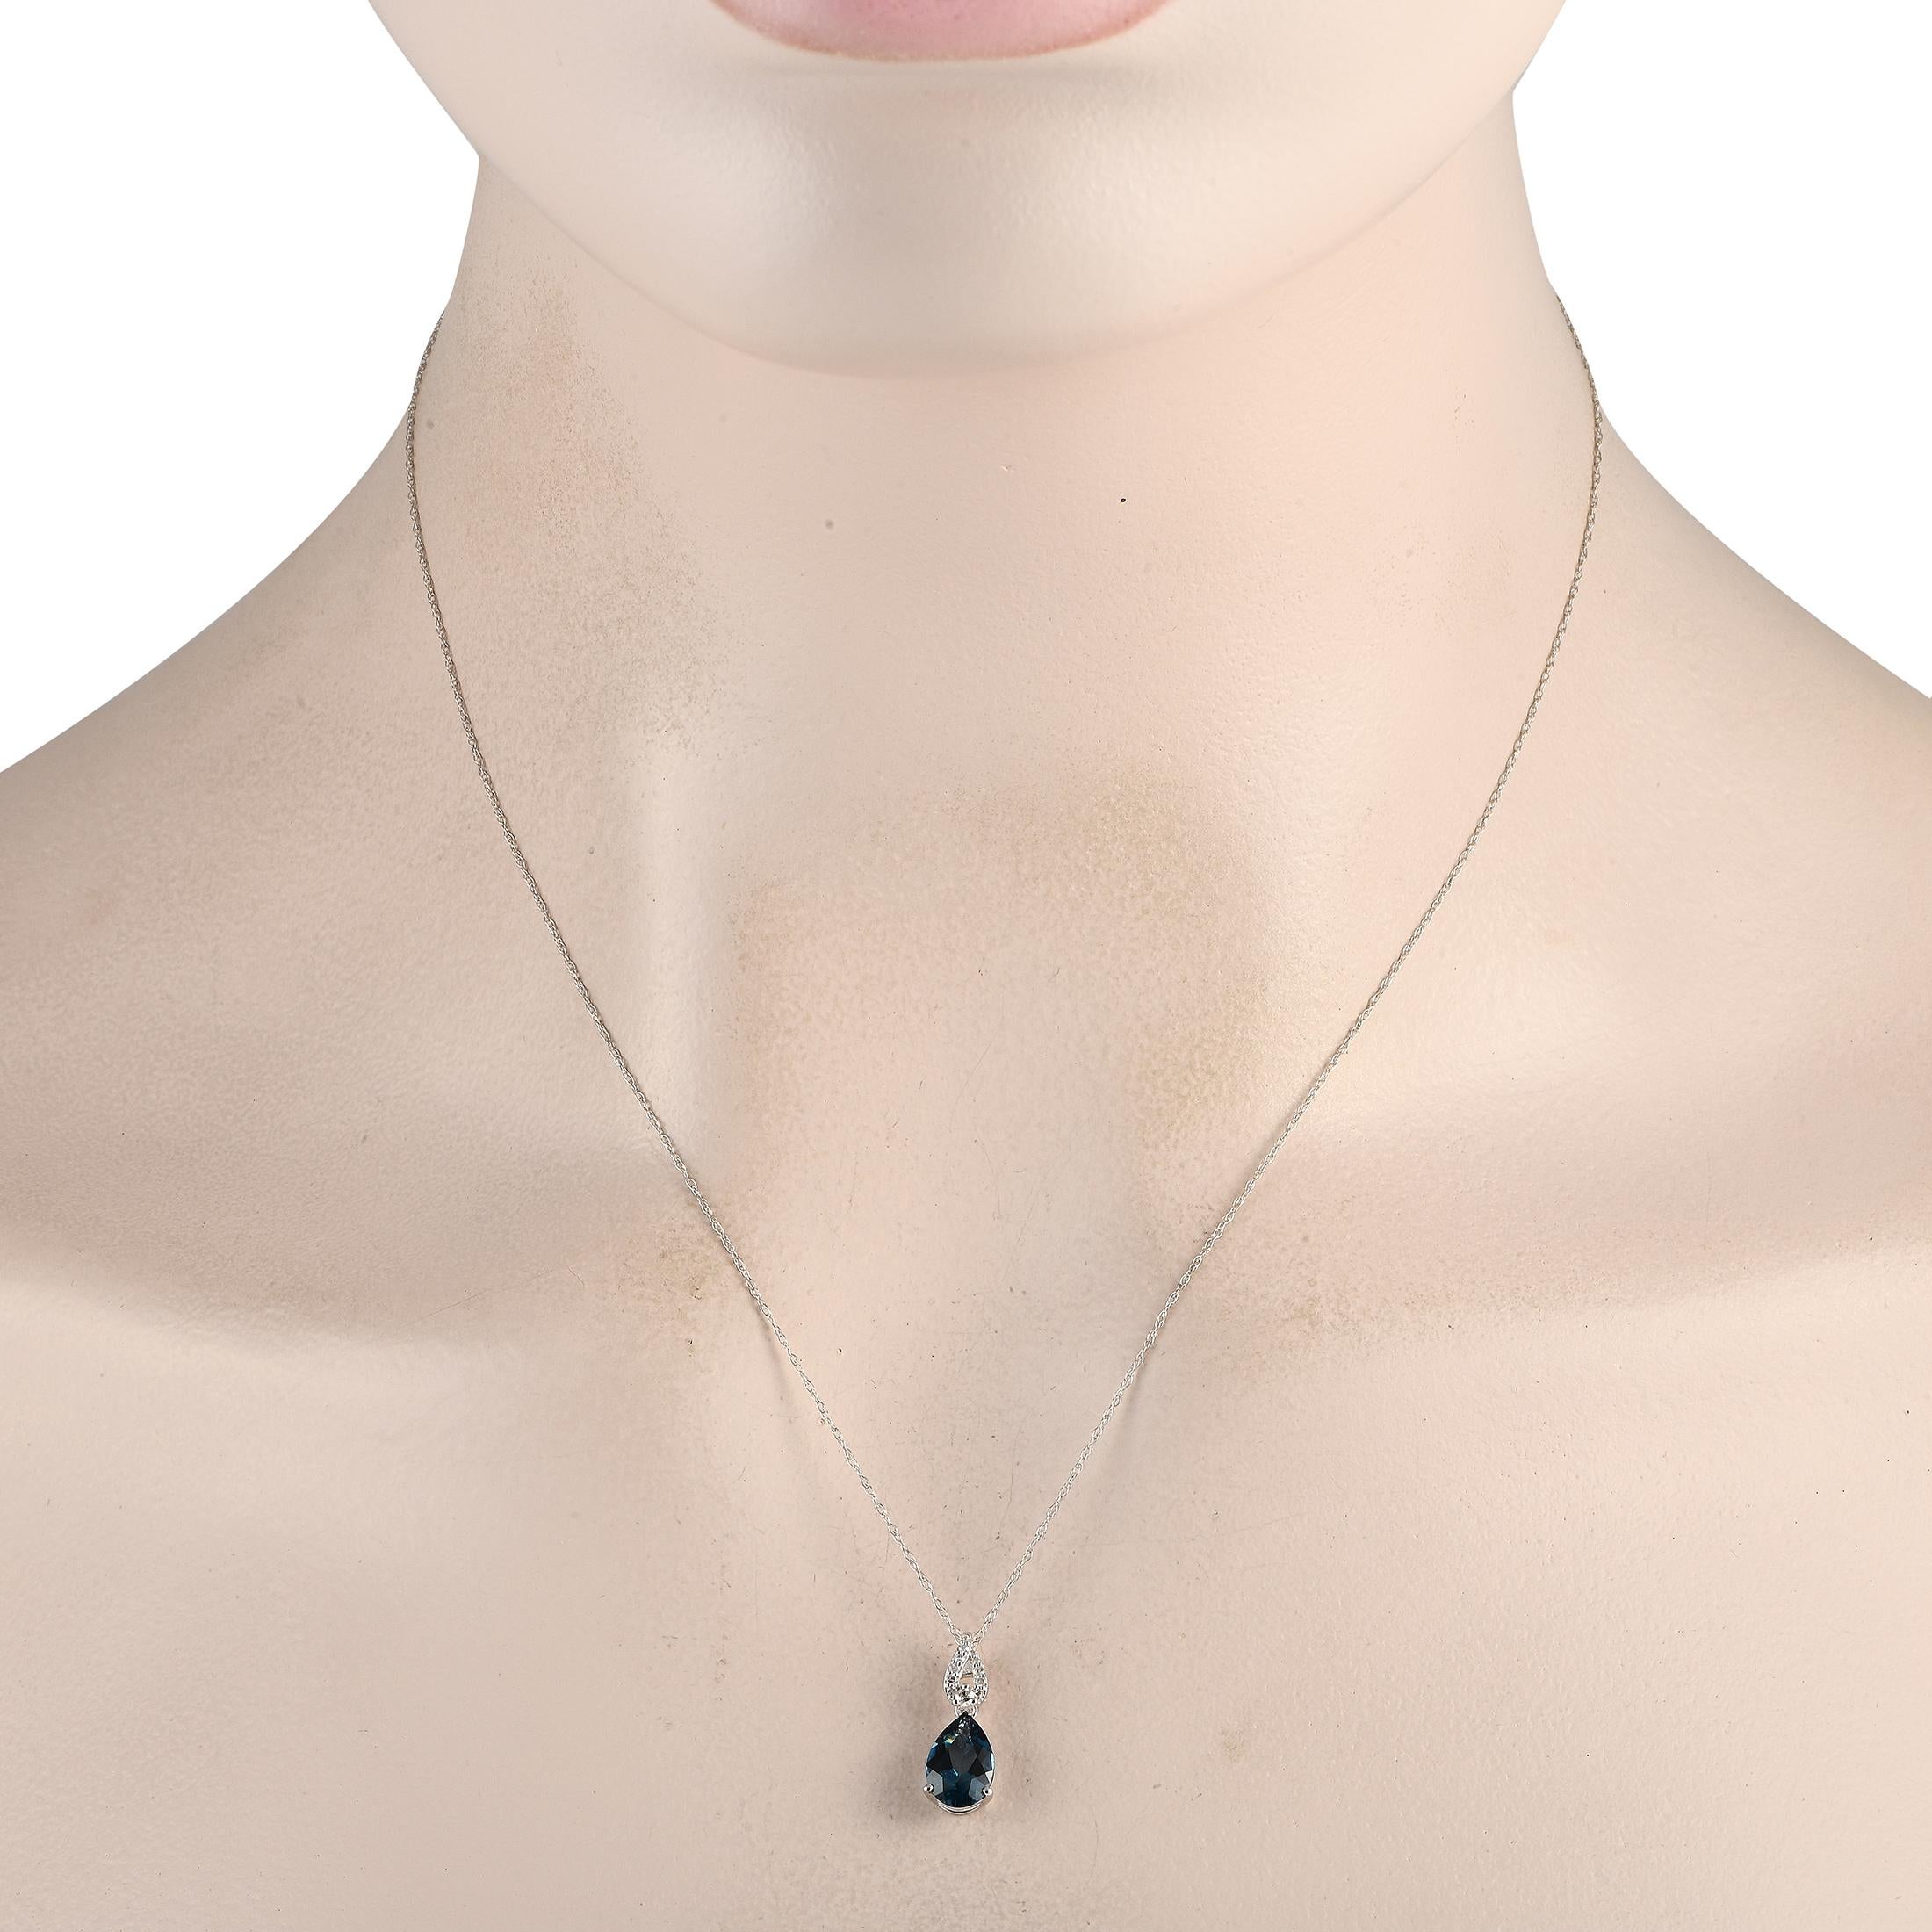 Diese Halskette verleiht jedem Look einen Hauch von Raffinesse. Es hat eine 18 lange Kabelkette aus 14 Karat Weißgold und einen mit Diamanten besetzten Bügel, der den lebhaften blauen Glanz des Blautopas im Birnenschliff unterstreicht. Die LB